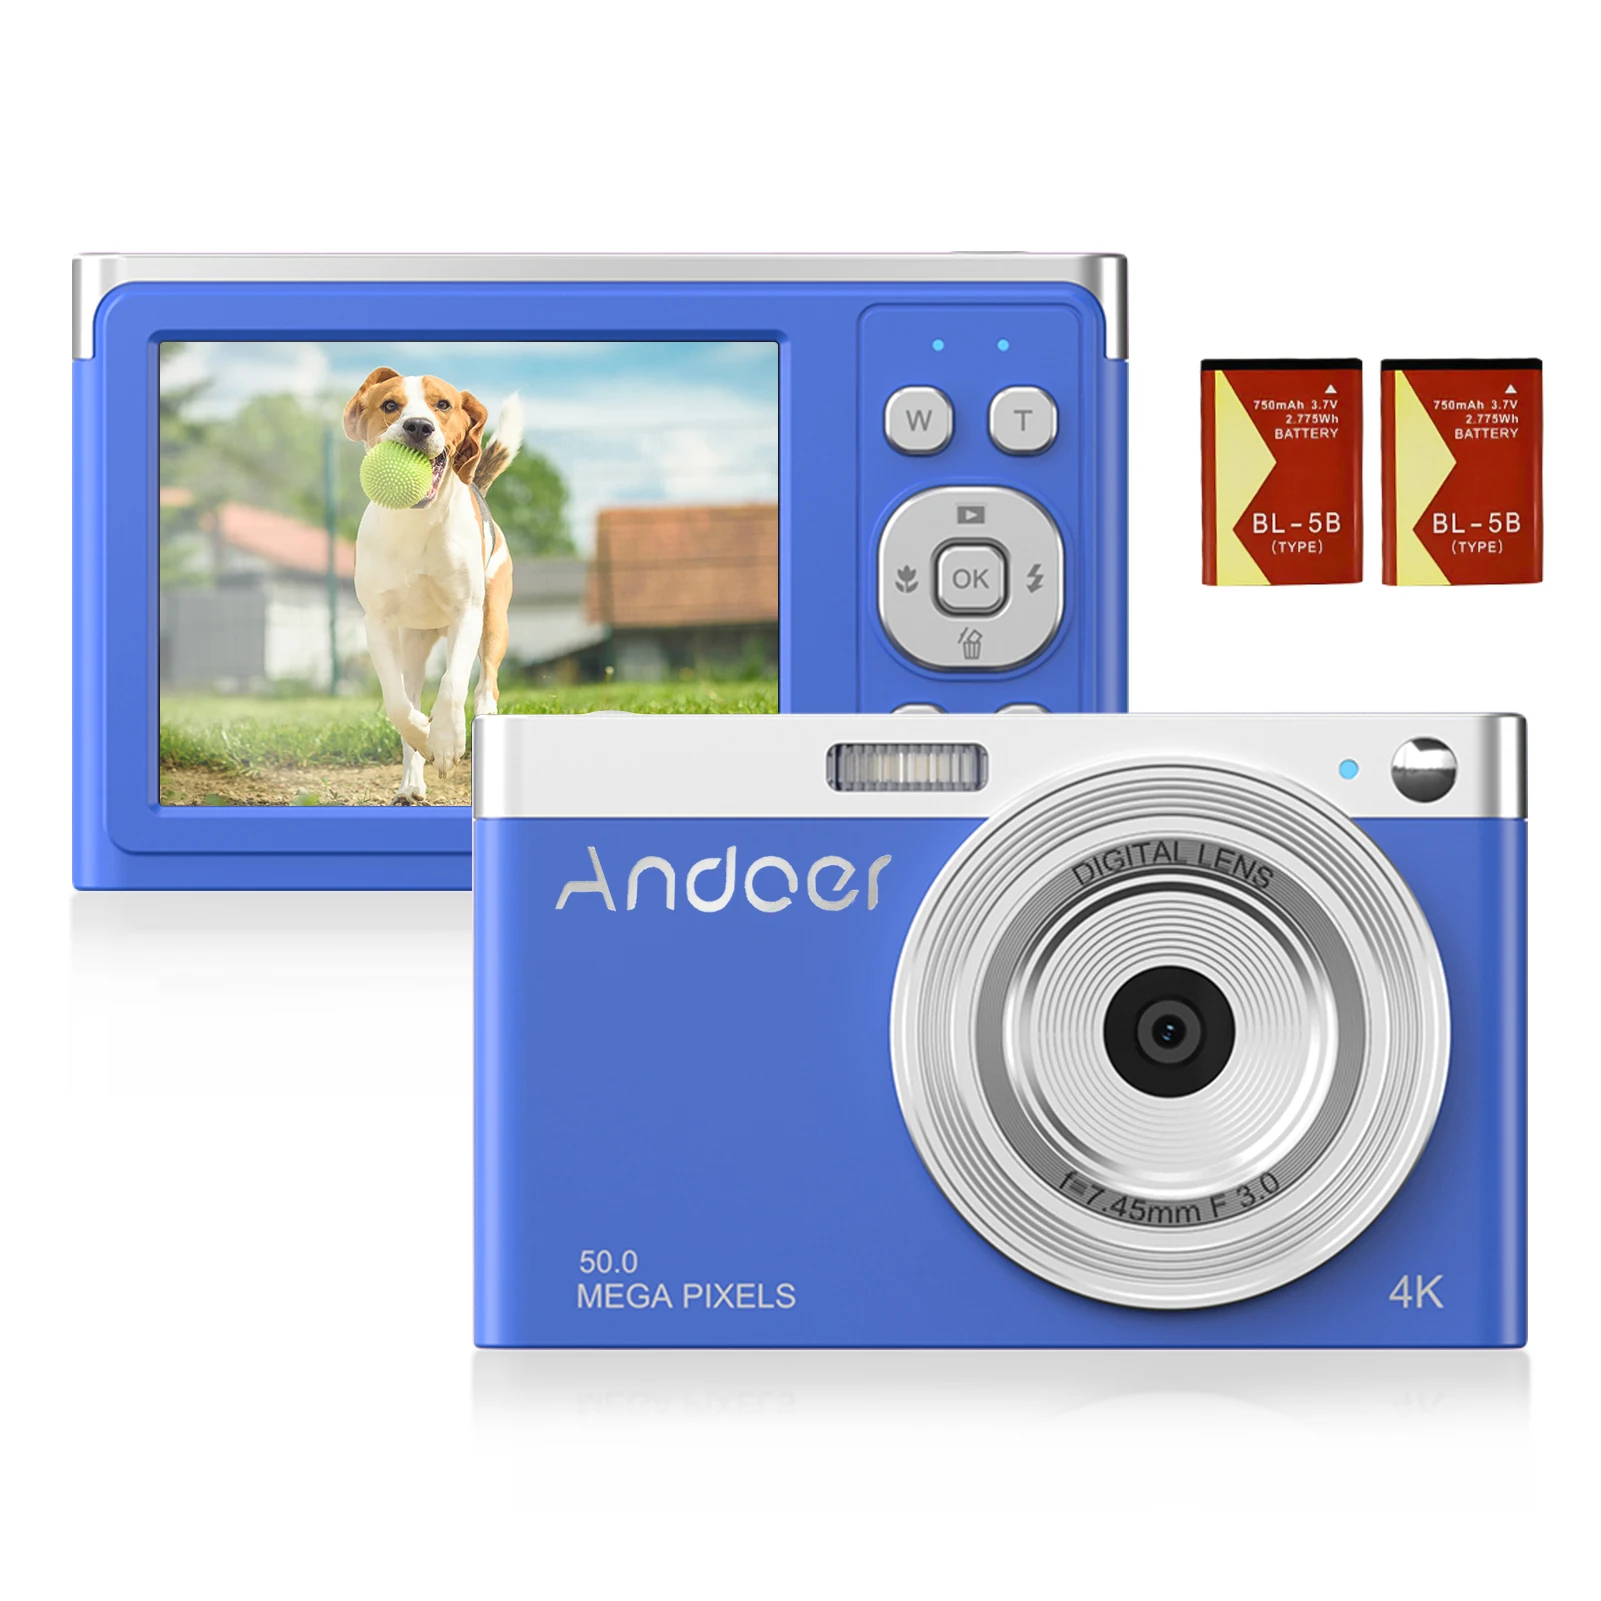 

Цифровая мини-камера Andoer 4K, видеокамера 50 МП, экран 2,88 дюйма IPS, автофокус, 16-кратный зум, детектор лица, встроенная вспышка для детей и подрос...